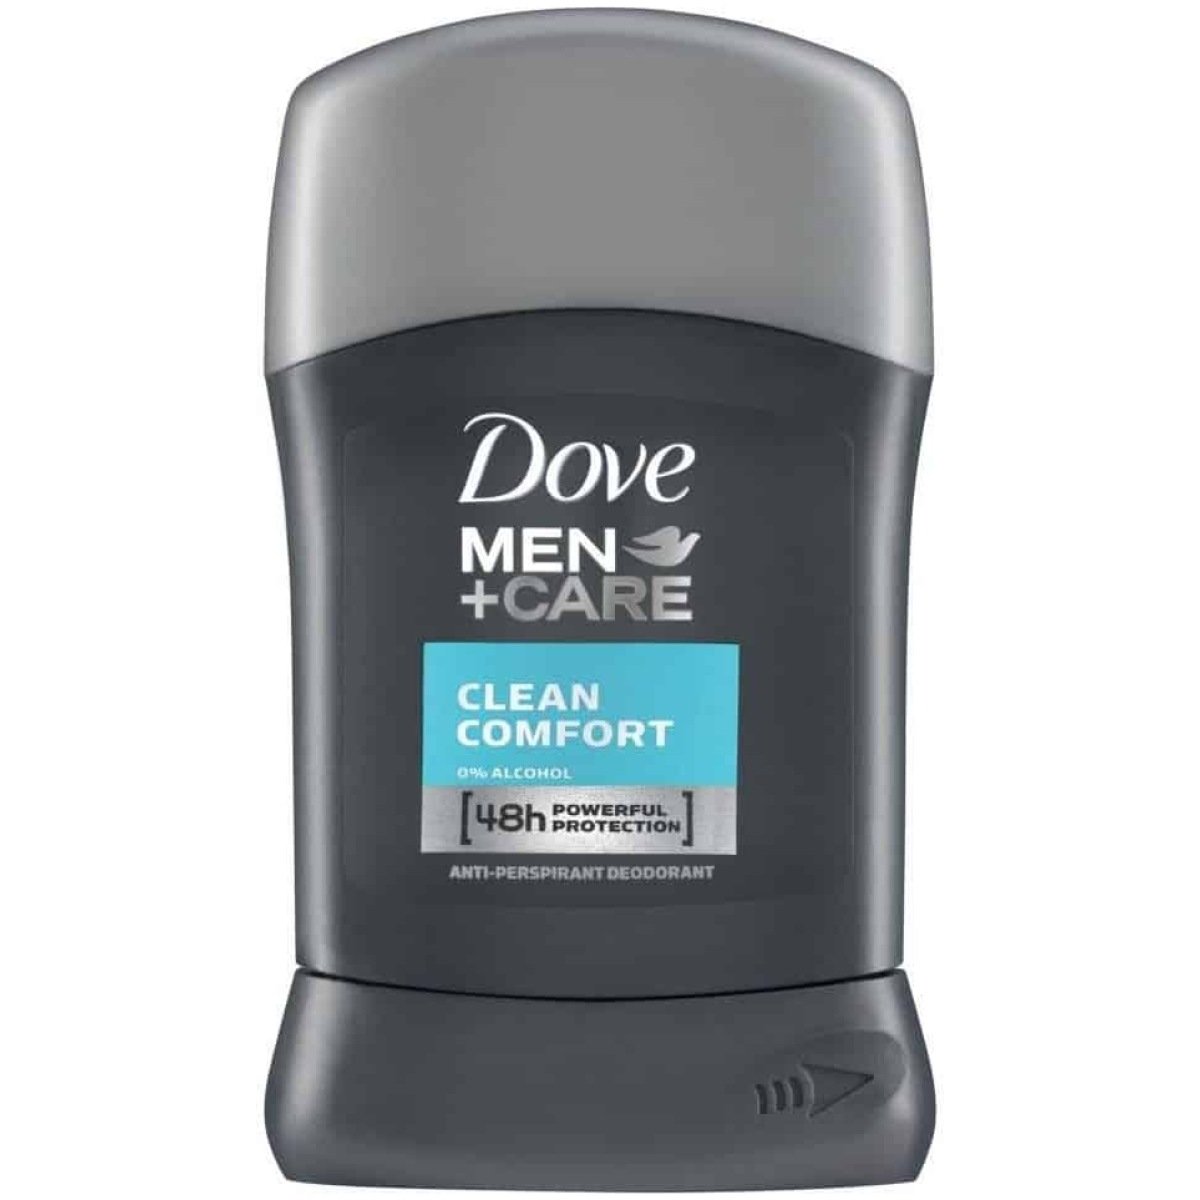 Dove Men + Care Antiperspirant Deodorant - Clean Comfort Stick (50ml)